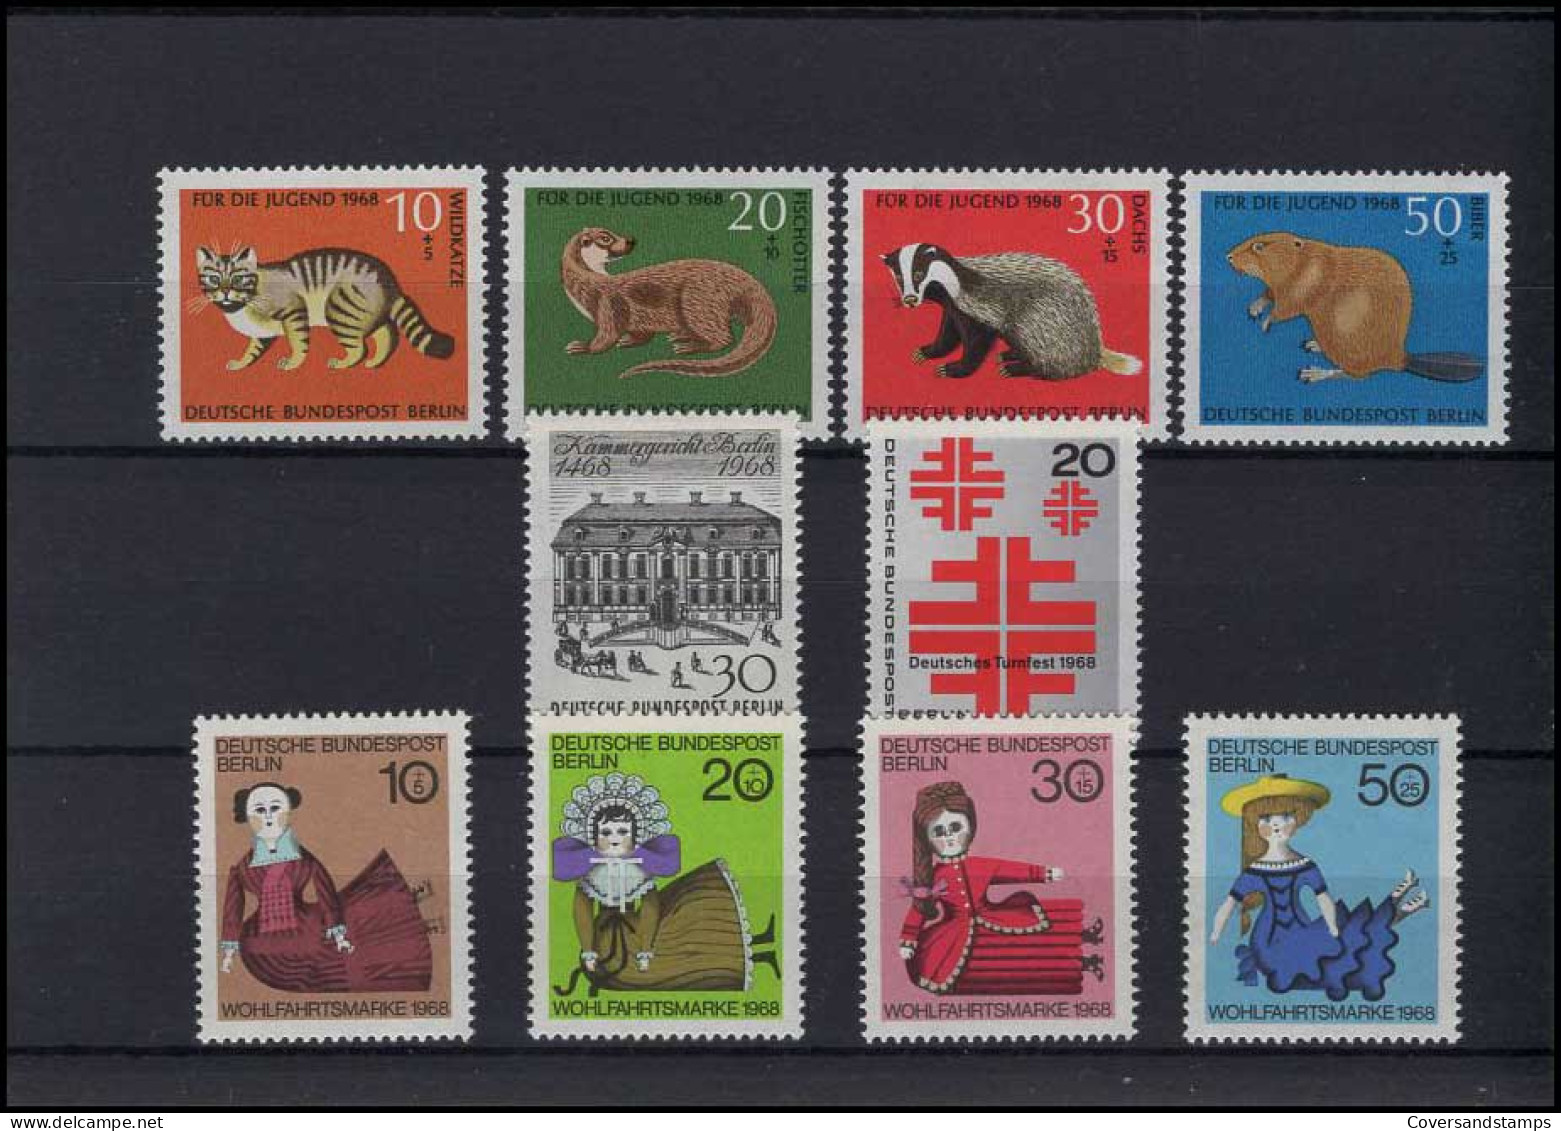   Bundespost Berlin - Volledig Jaar / Jahrgang 1968  MNH - Unused Stamps